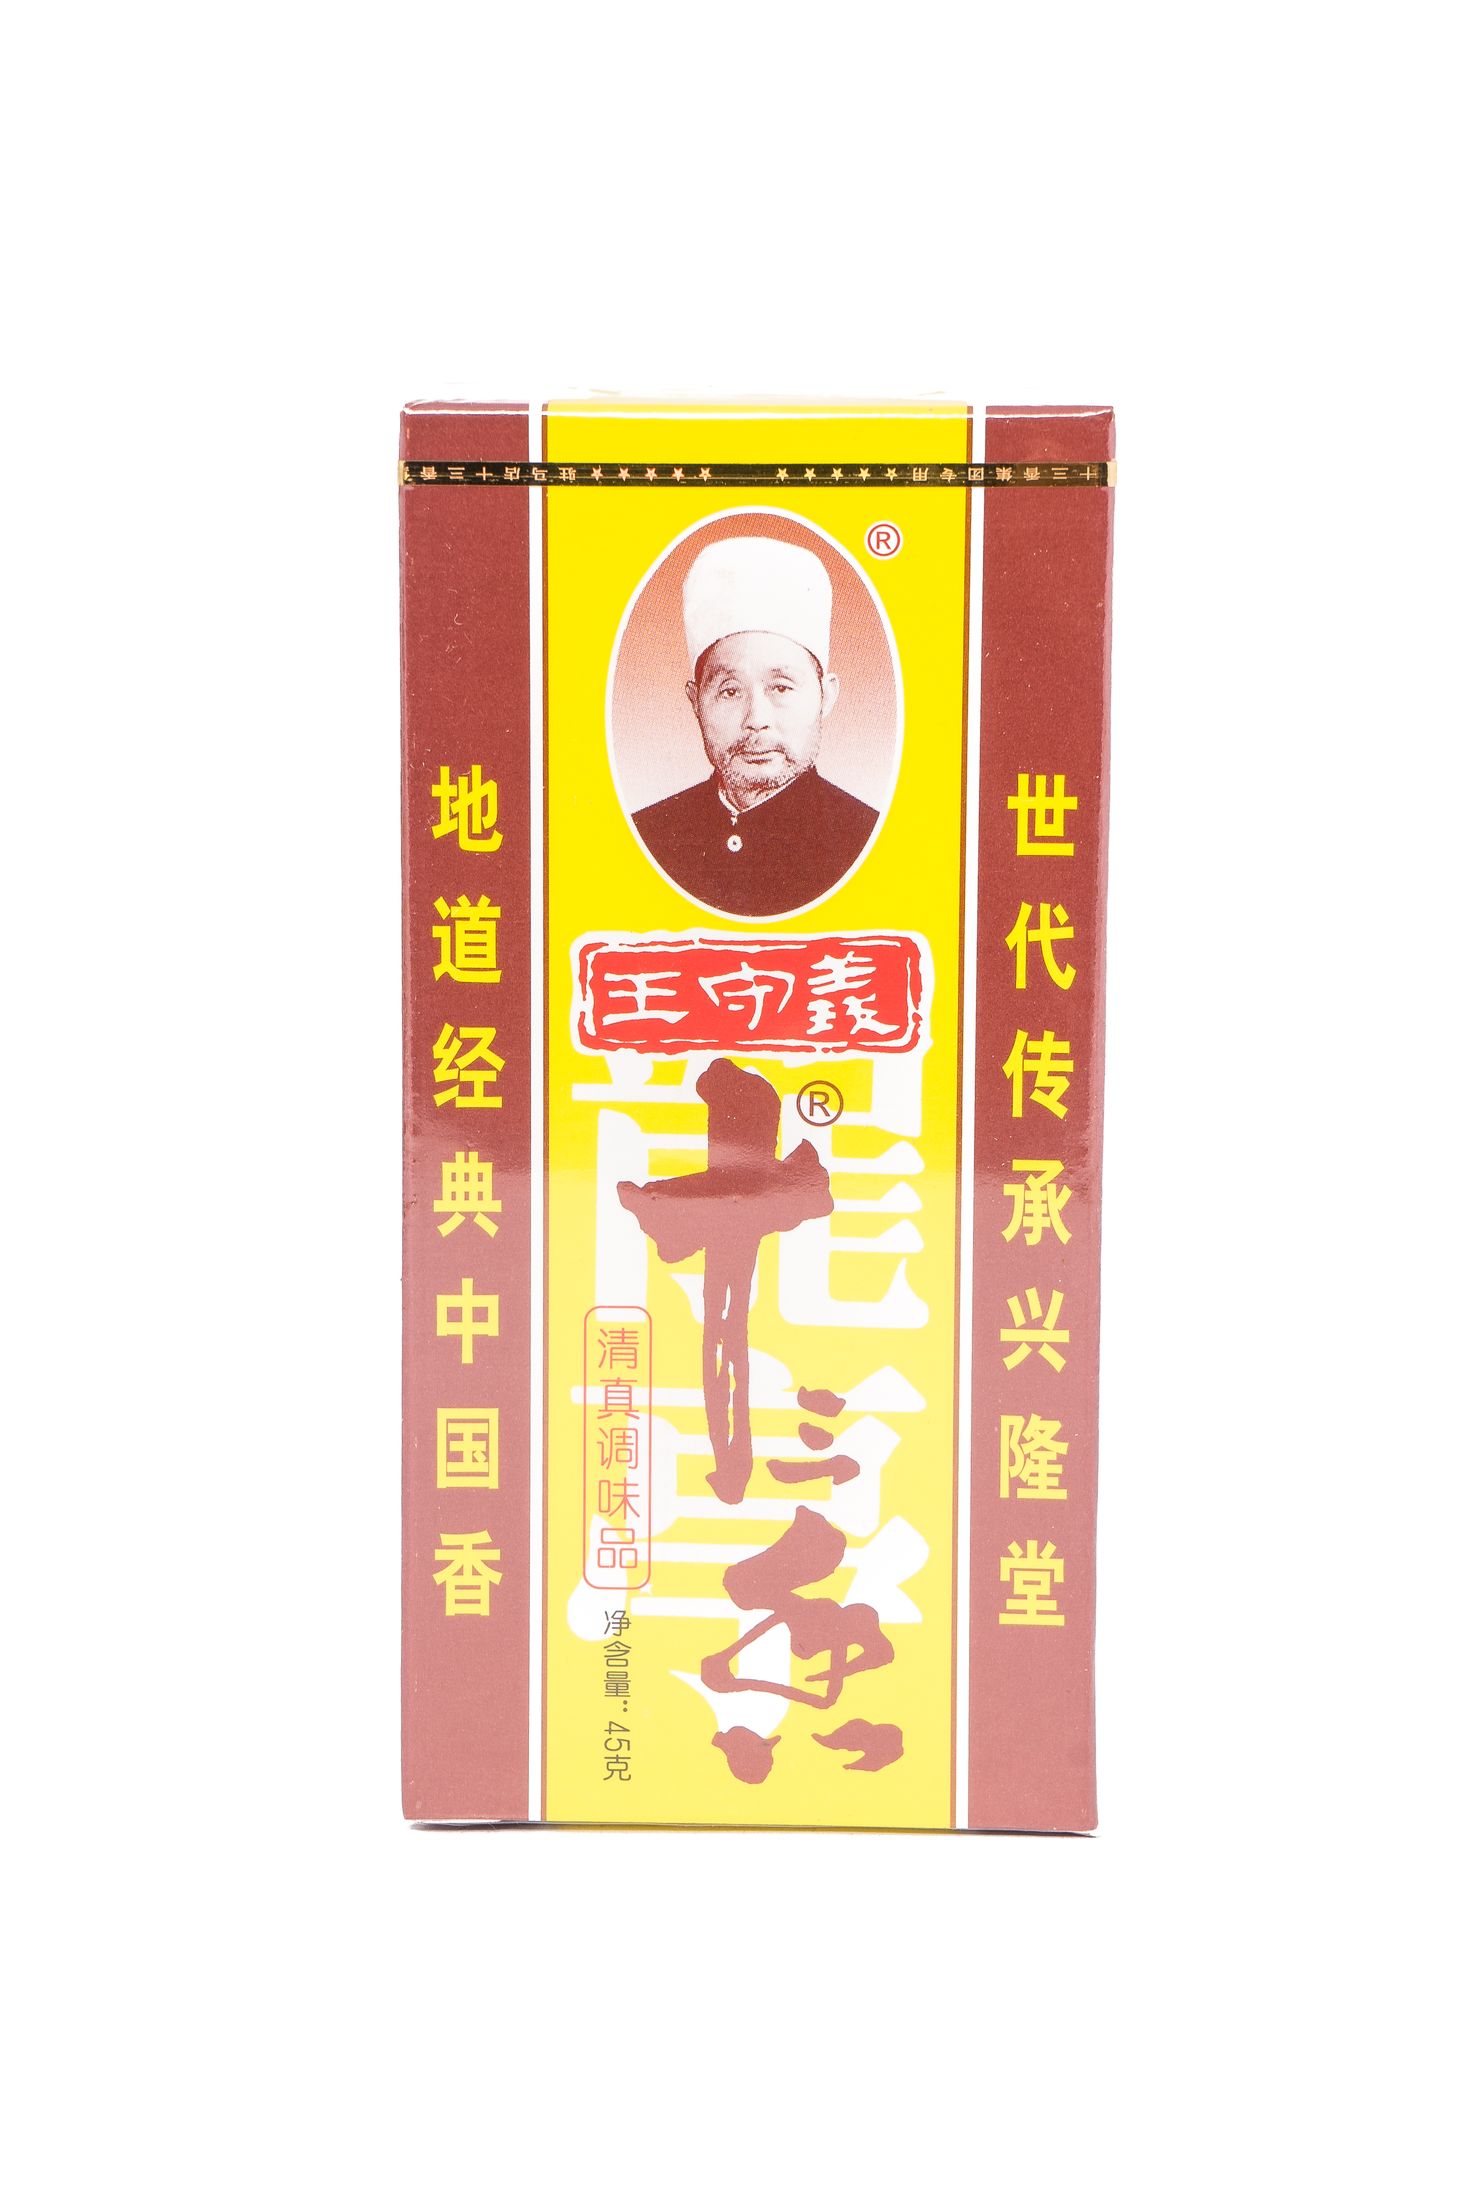 Wangshouyi 13 spice powder